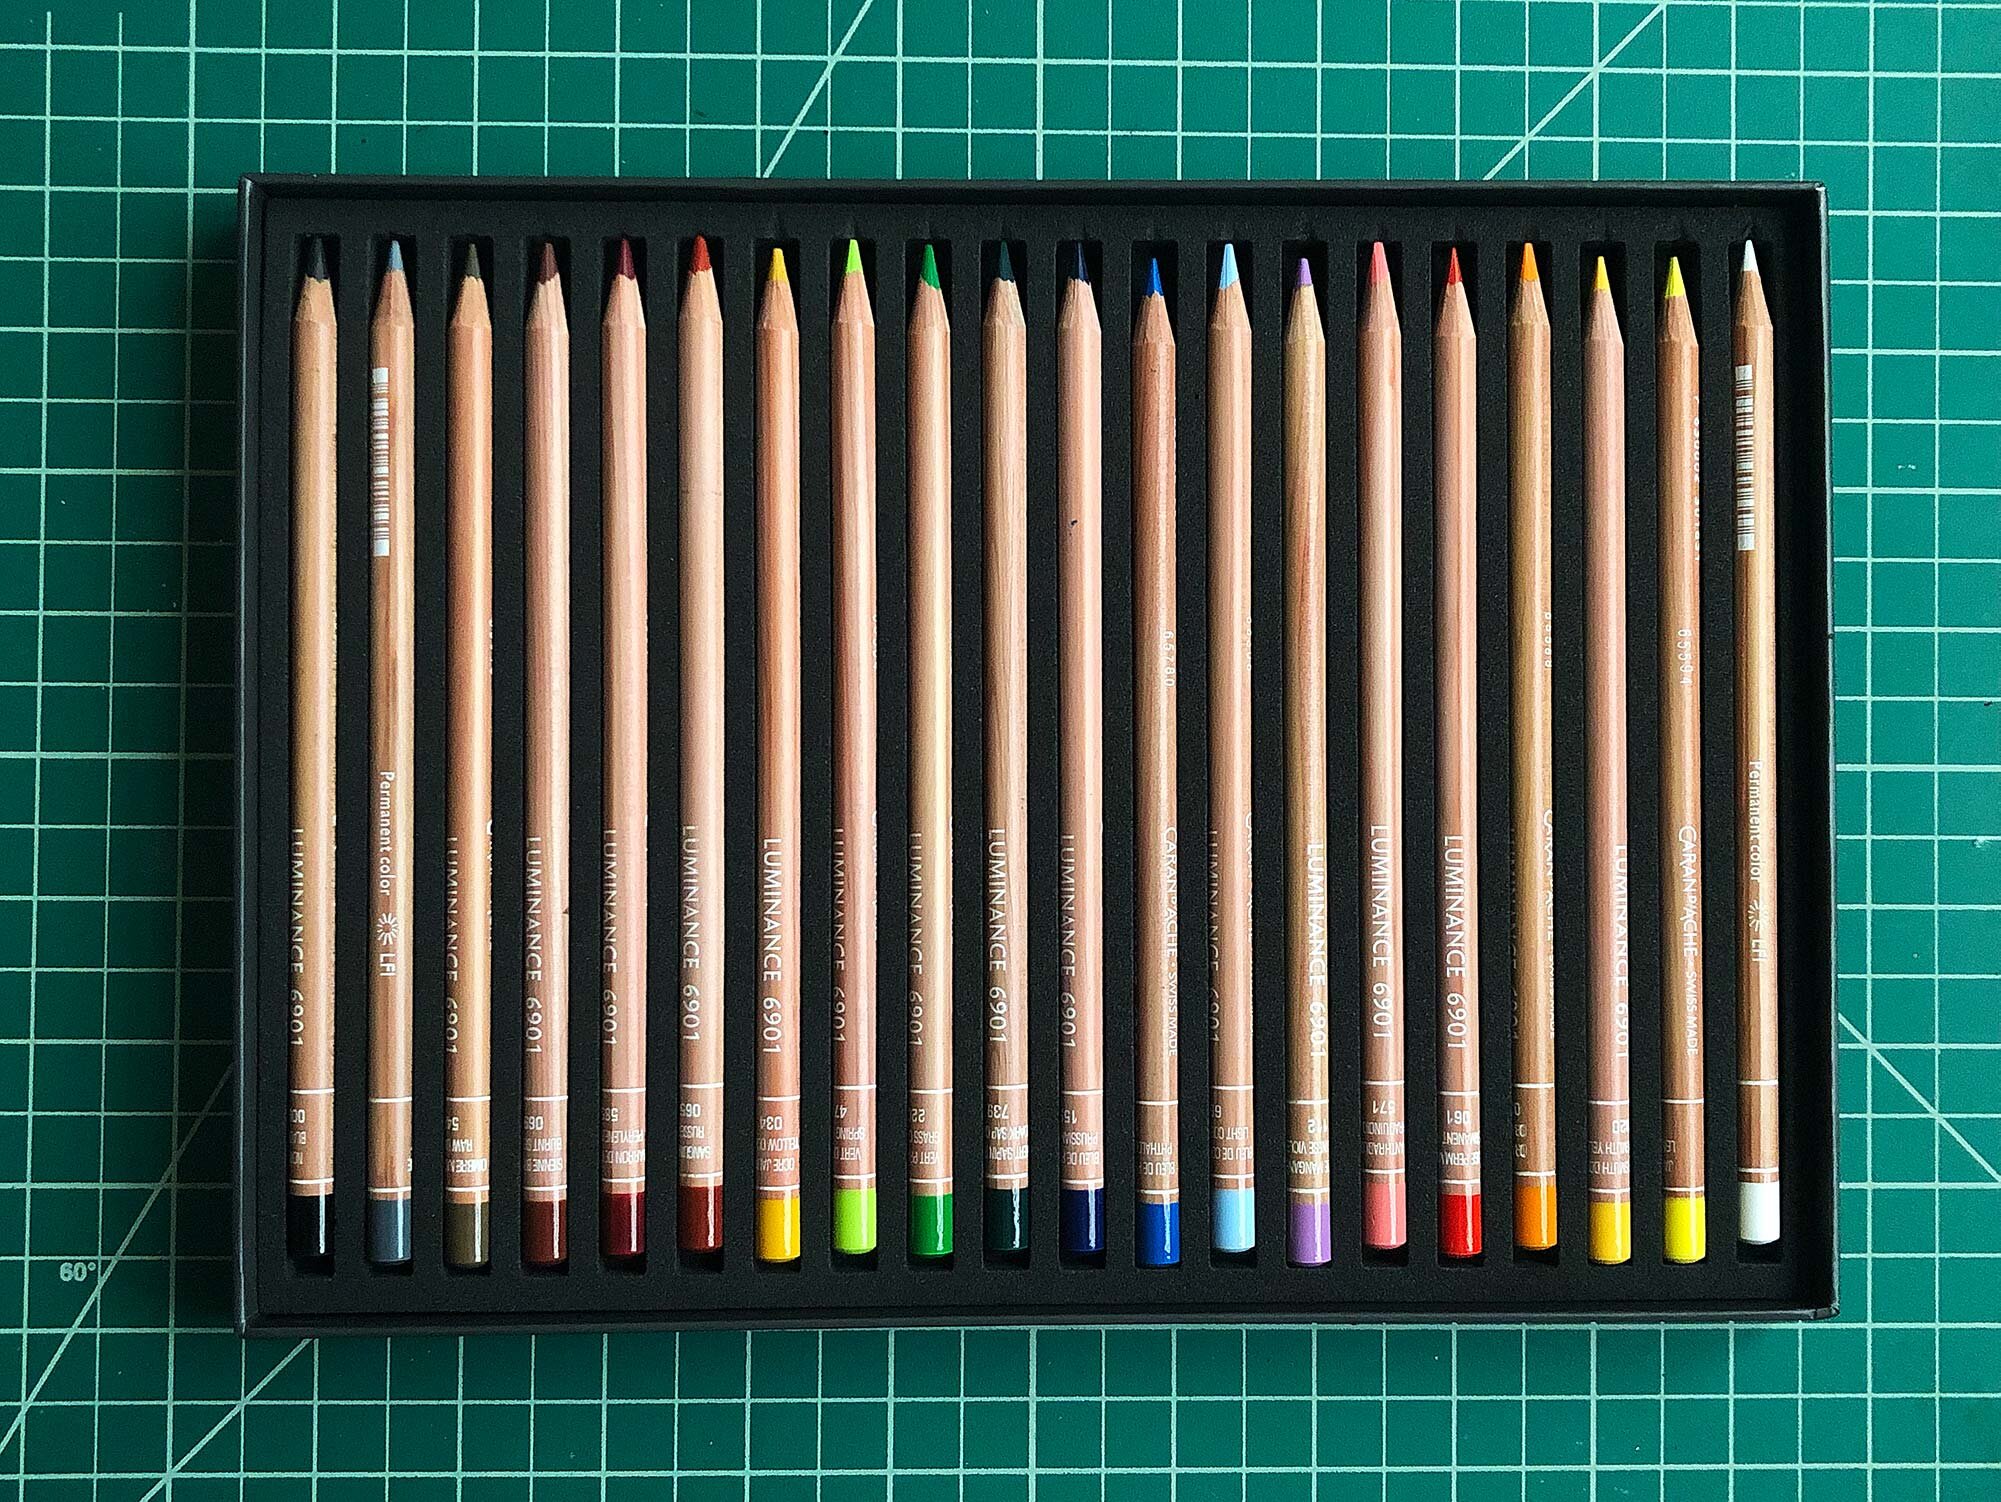 Caran D'Ache : Luminance Color Pencil Sets